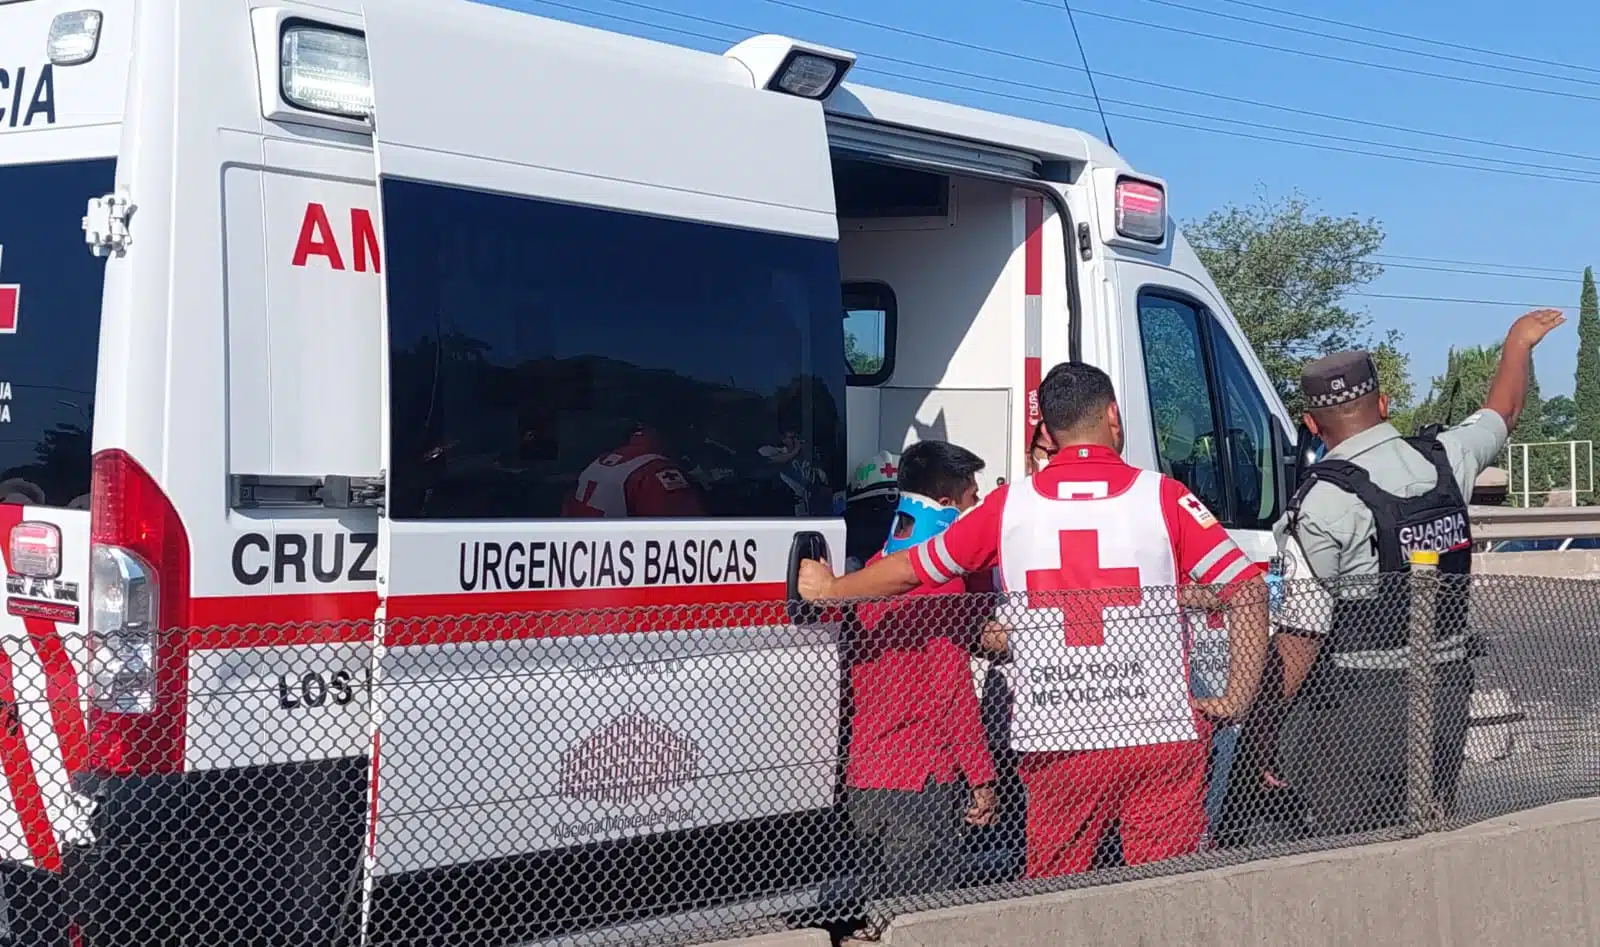 Personal de Cruz Roja presentes en accidente vial